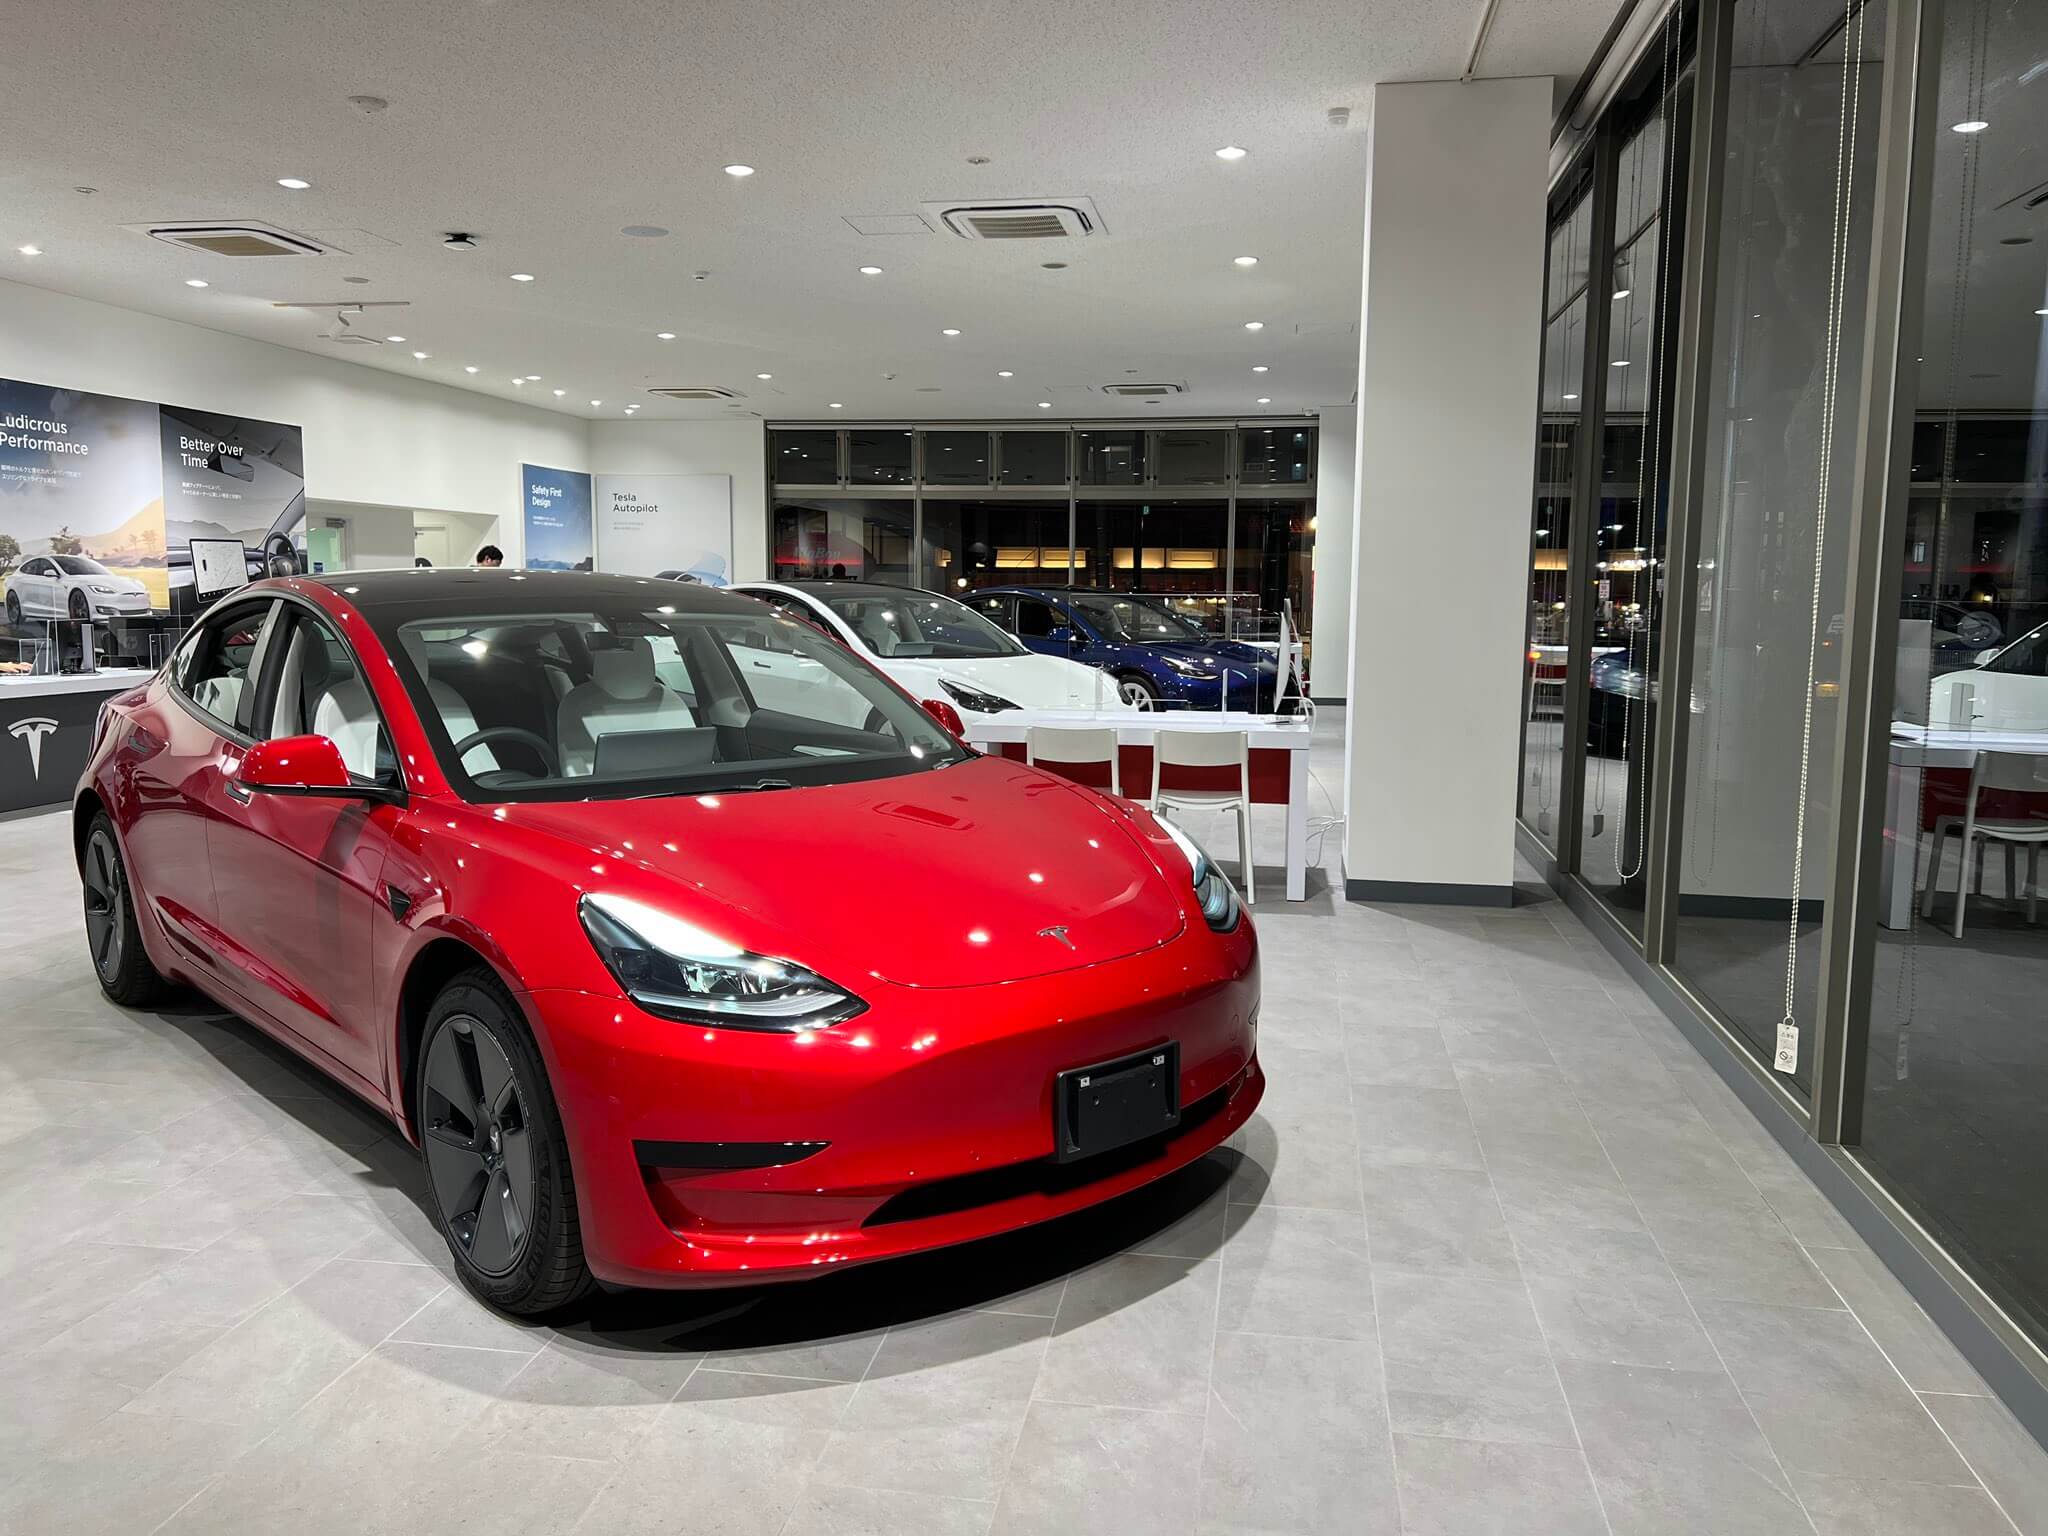 Подержанные автомобили Tesla Model 3 продаются в Австралии за 91 000 долларов.